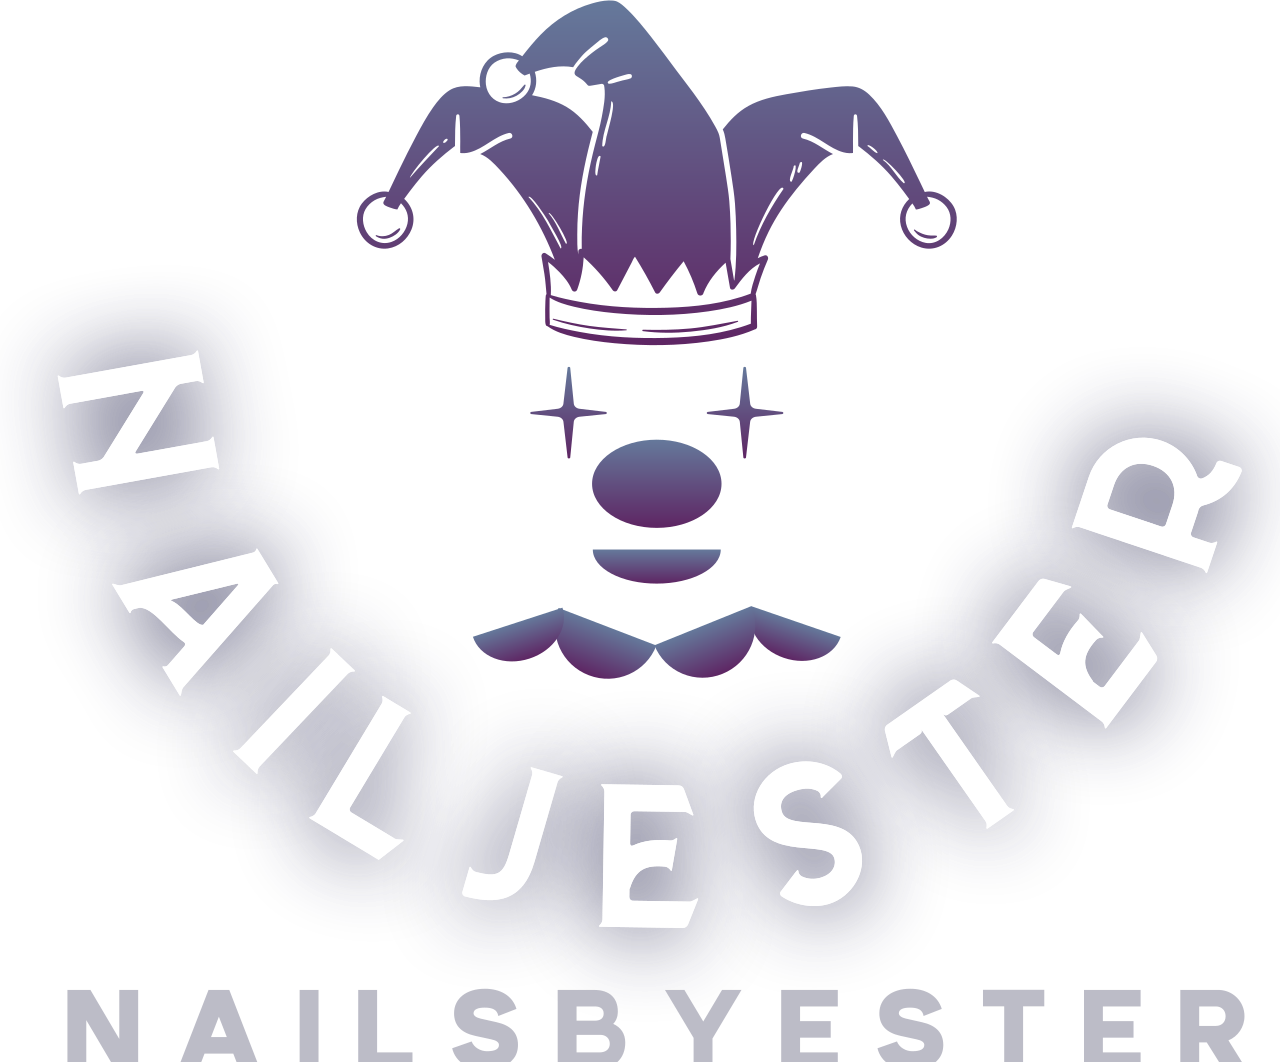 NAILJESTER 's logo